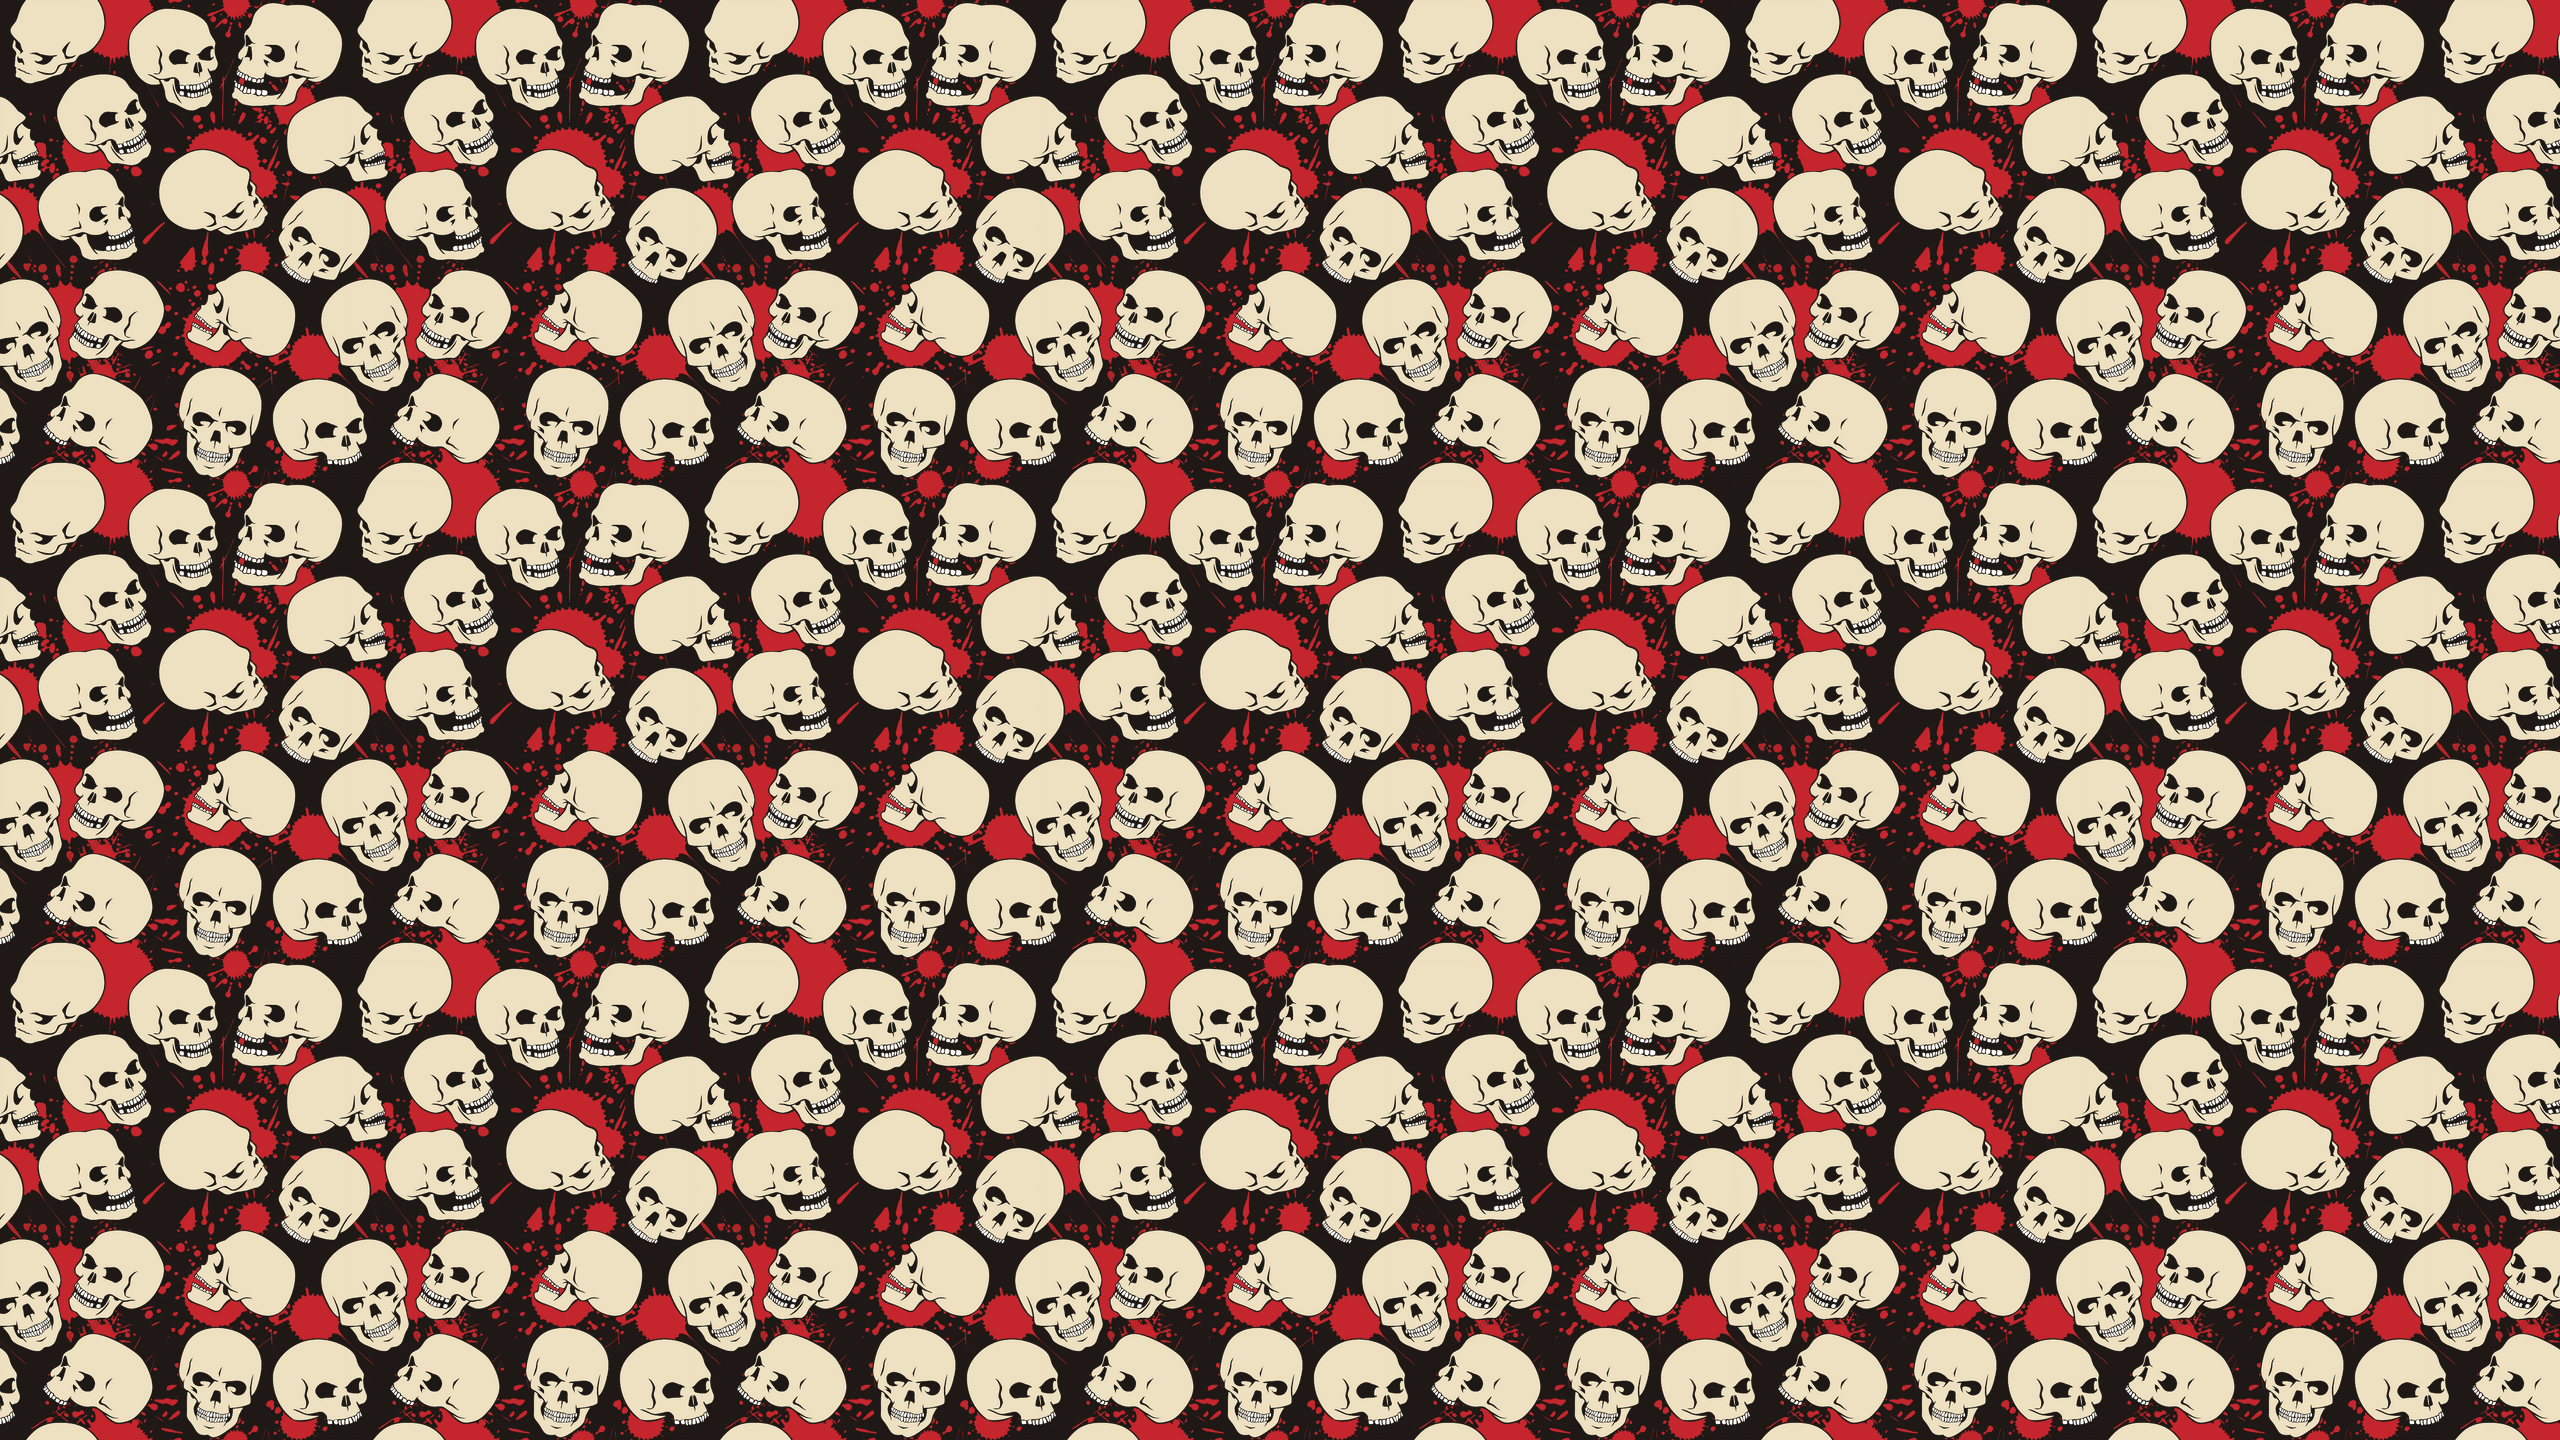 Wallpaper Skulls Tumblr